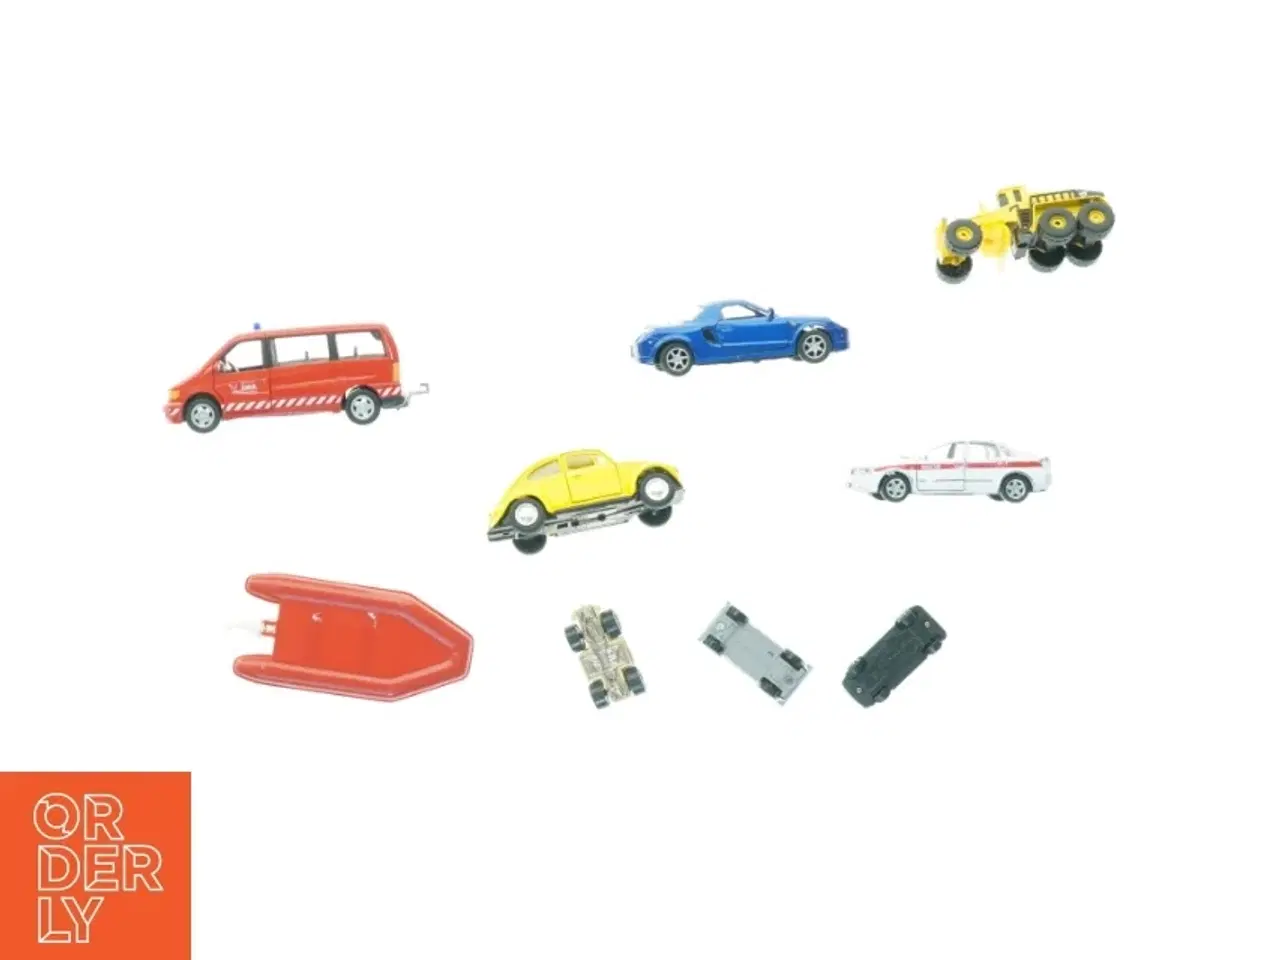 Billede 1 - Samling af diverse legetøjsbiler (str. 13 x 6 cm)